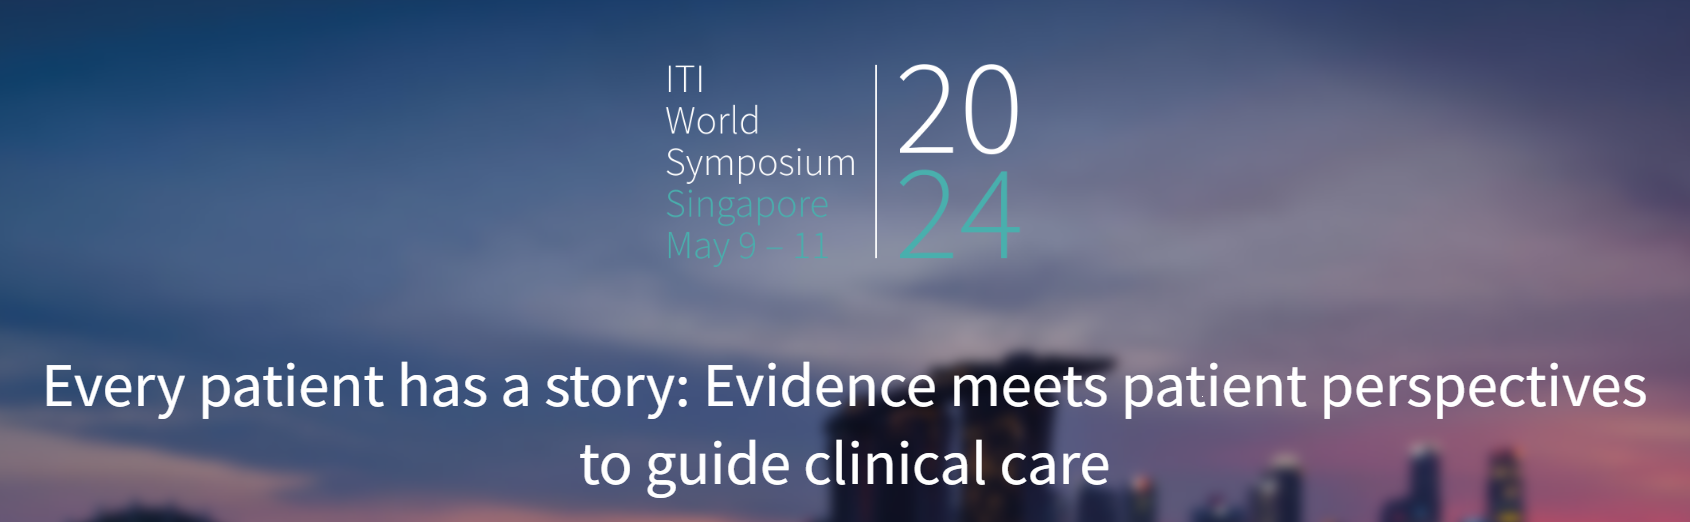 ITI World Symposium